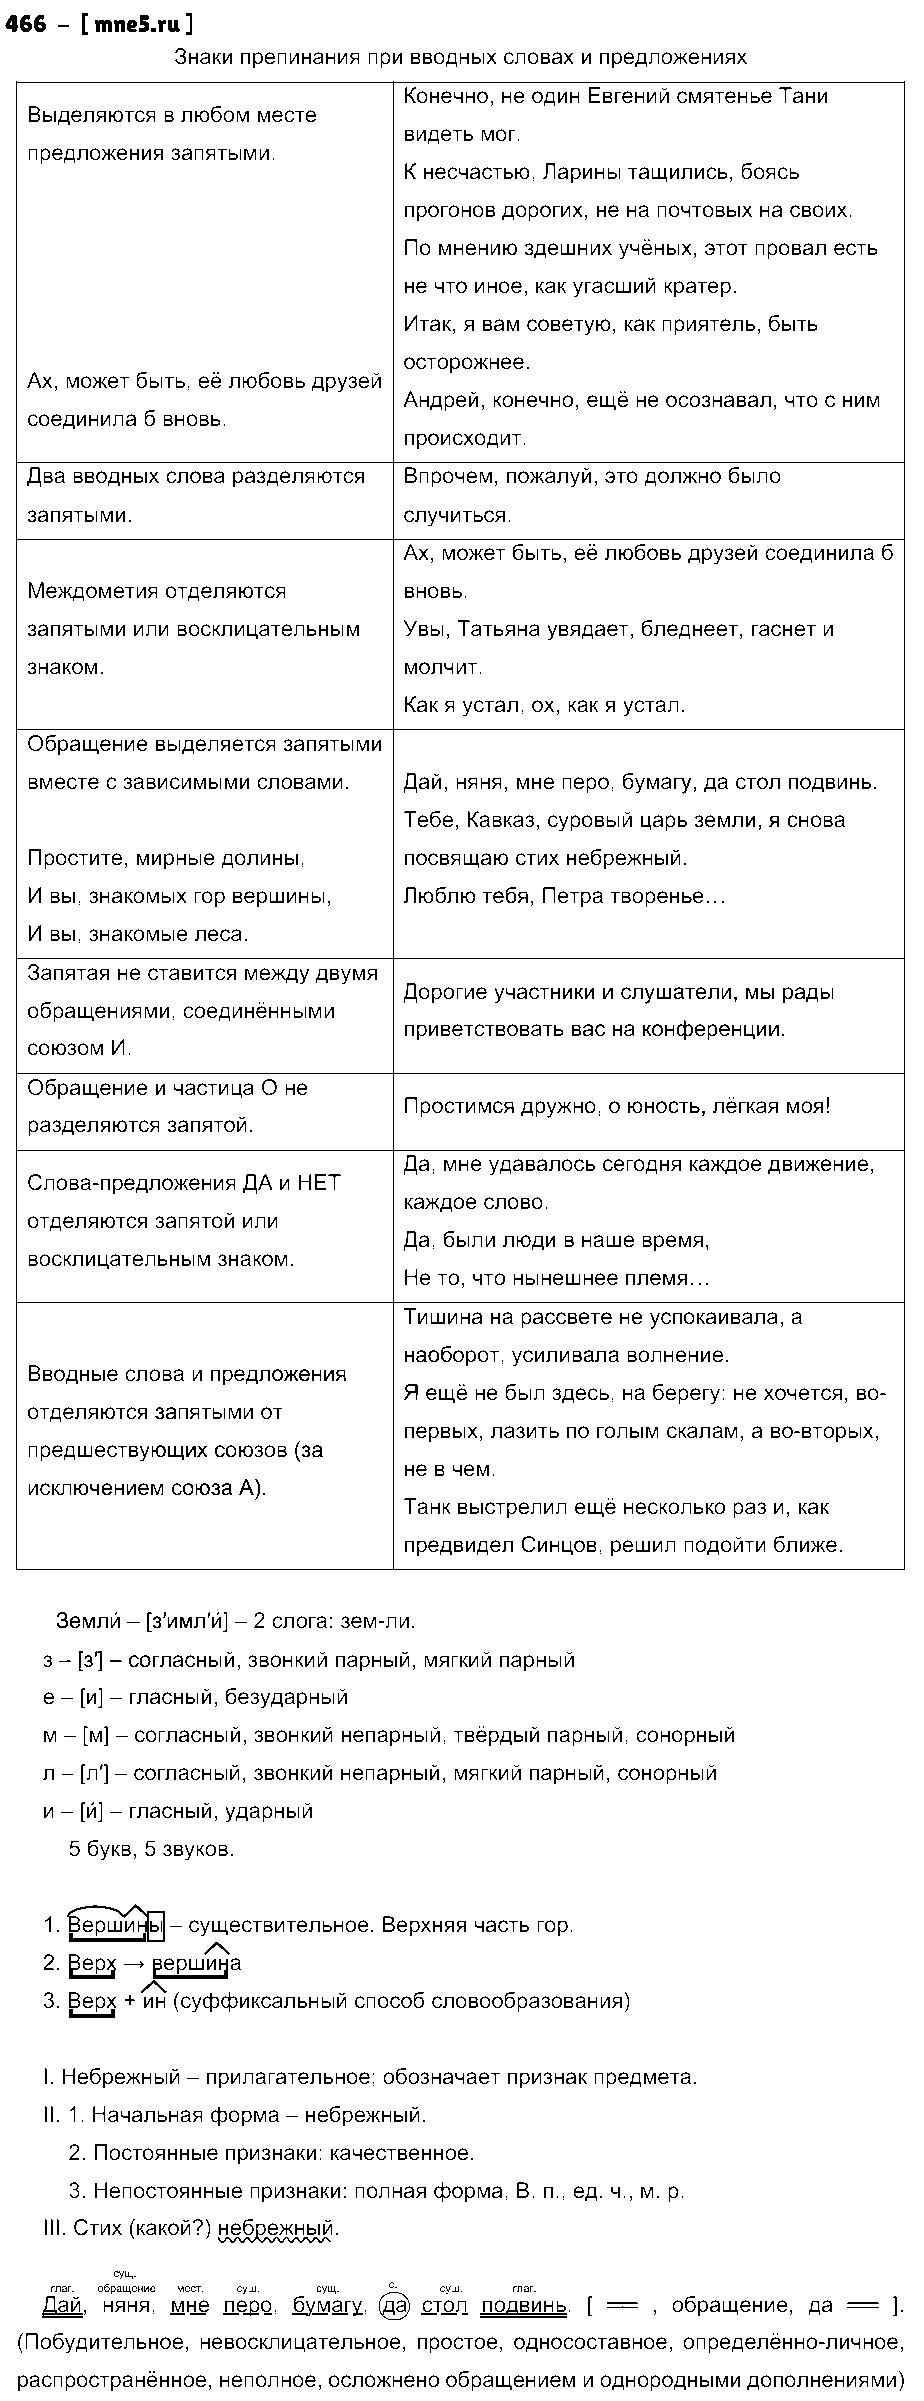 ГДЗ Русский язык 9 класс - 466